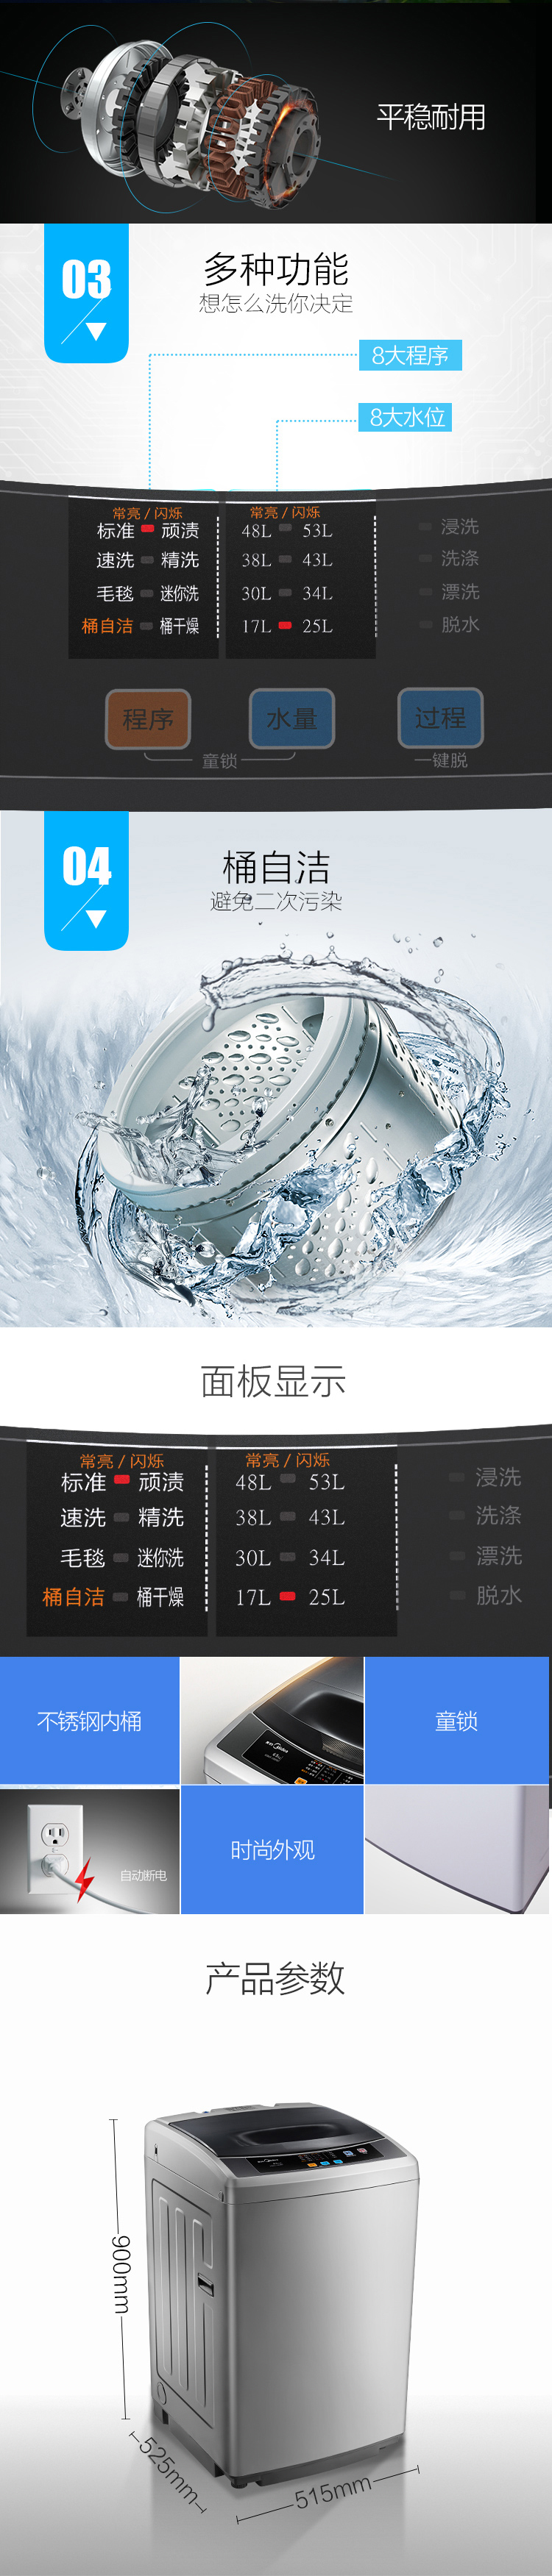 【苏宁专供】美的洗衣机MB65-1000H